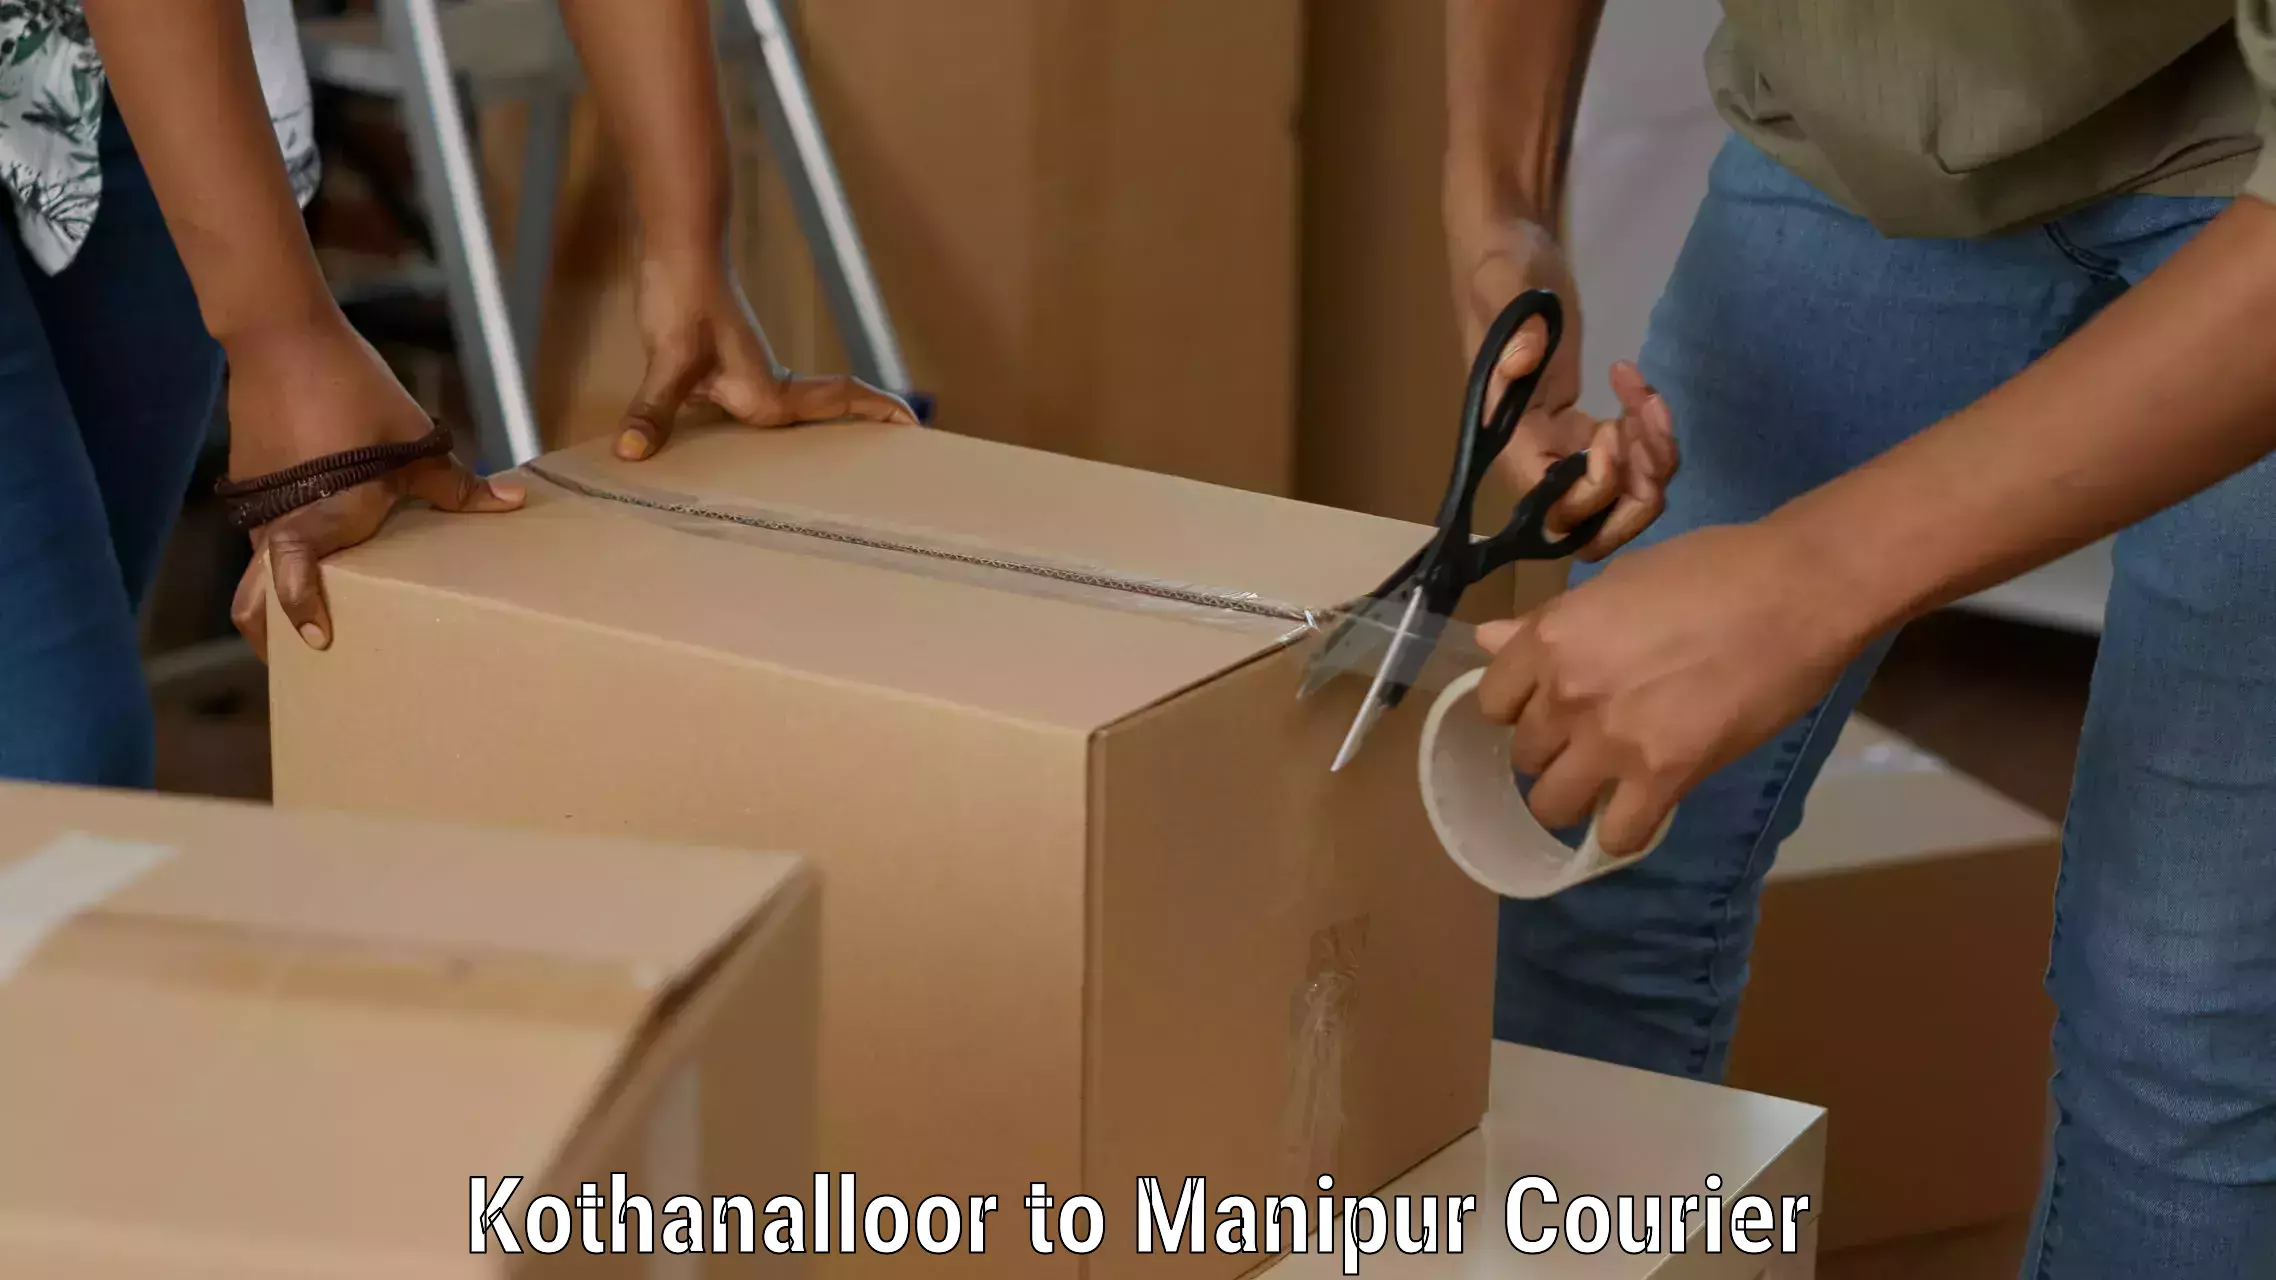 Seamless shipping experience Kothanalloor to Churachandpur